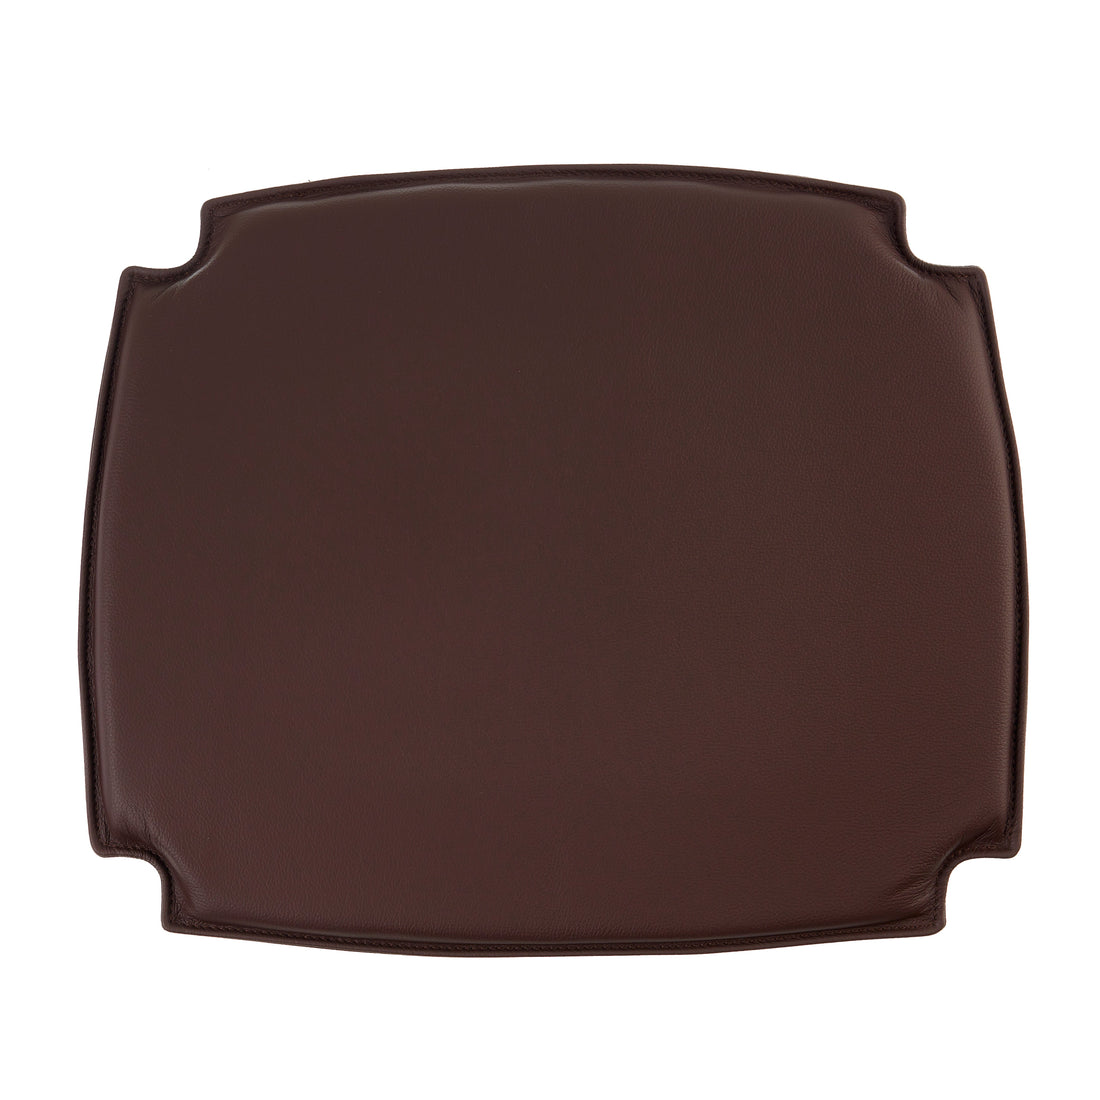 Cushion to Børge Mogensen BM1 chair in dark brown leather